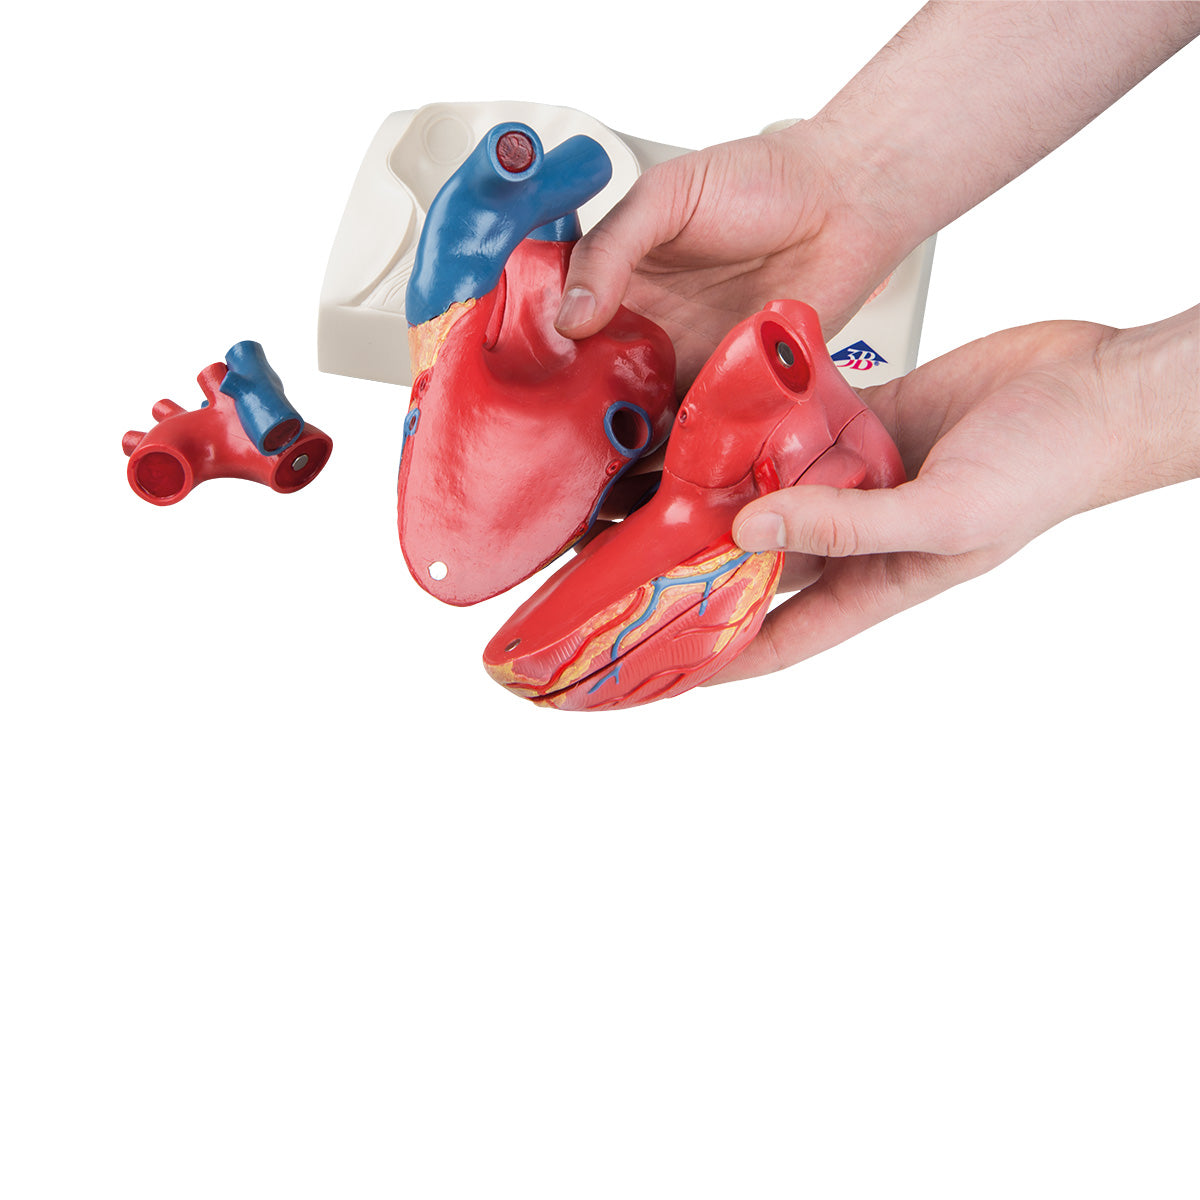 Hjärtmodell med fokus på de 4 hjärtklaffarna och gips efter ett riktigt hjärta